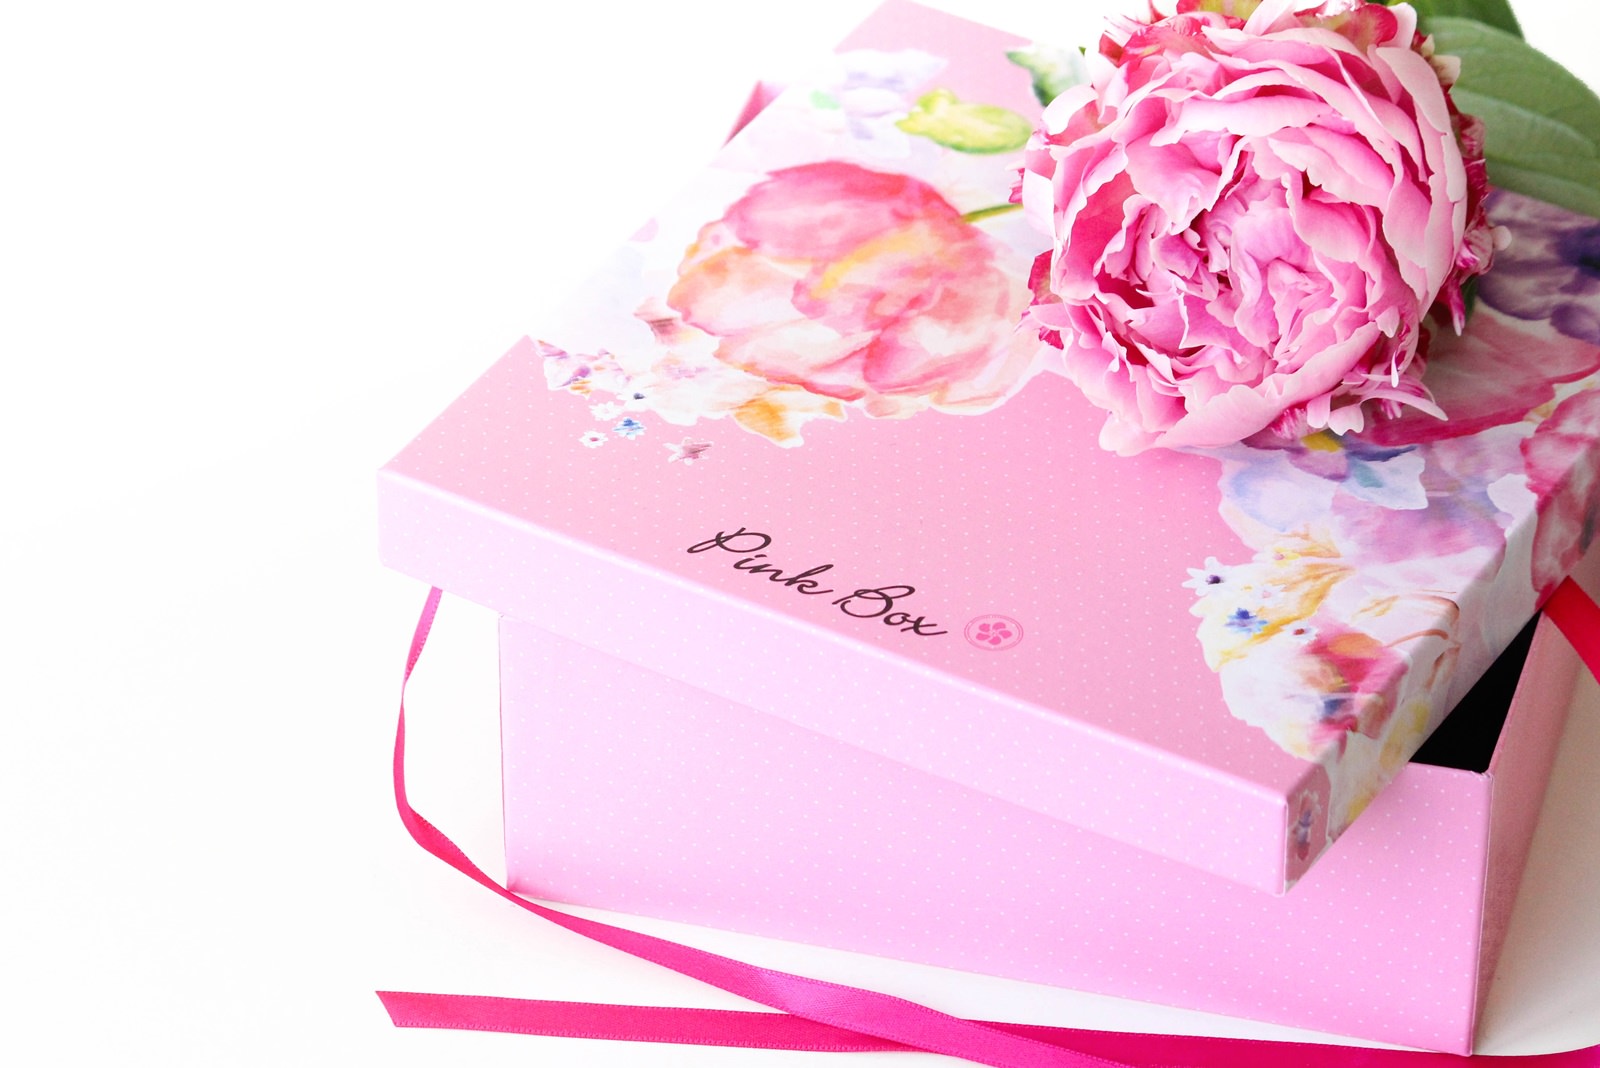 Des Belles Choses_Pink Box Mai 7